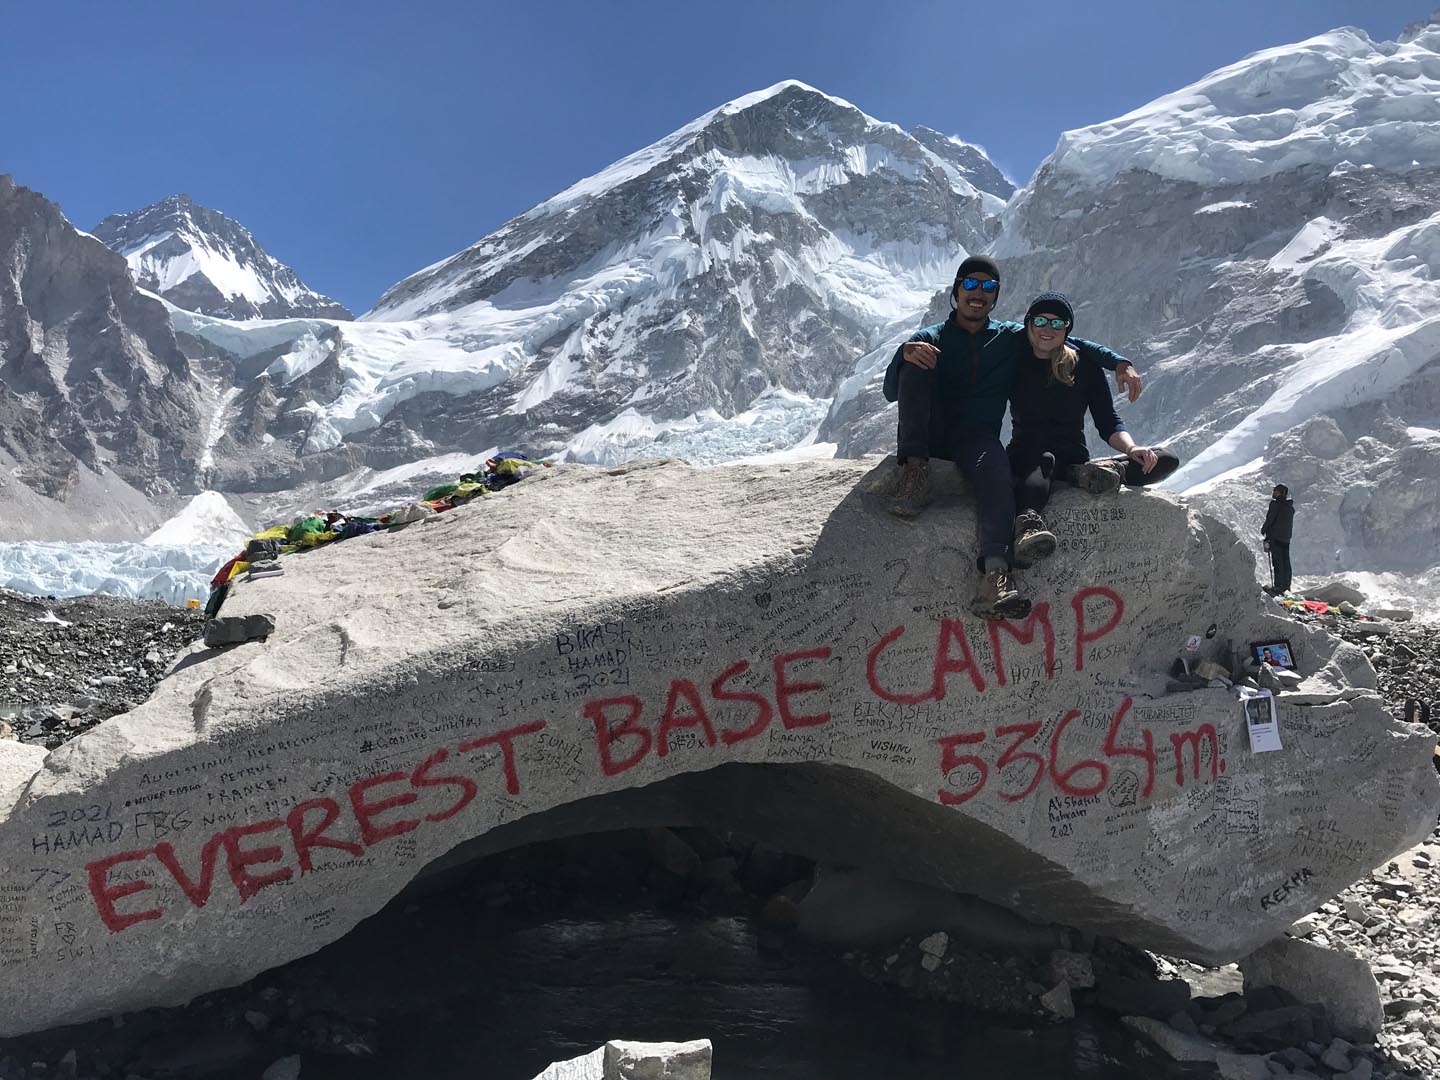 Aced Everest Base Camp!